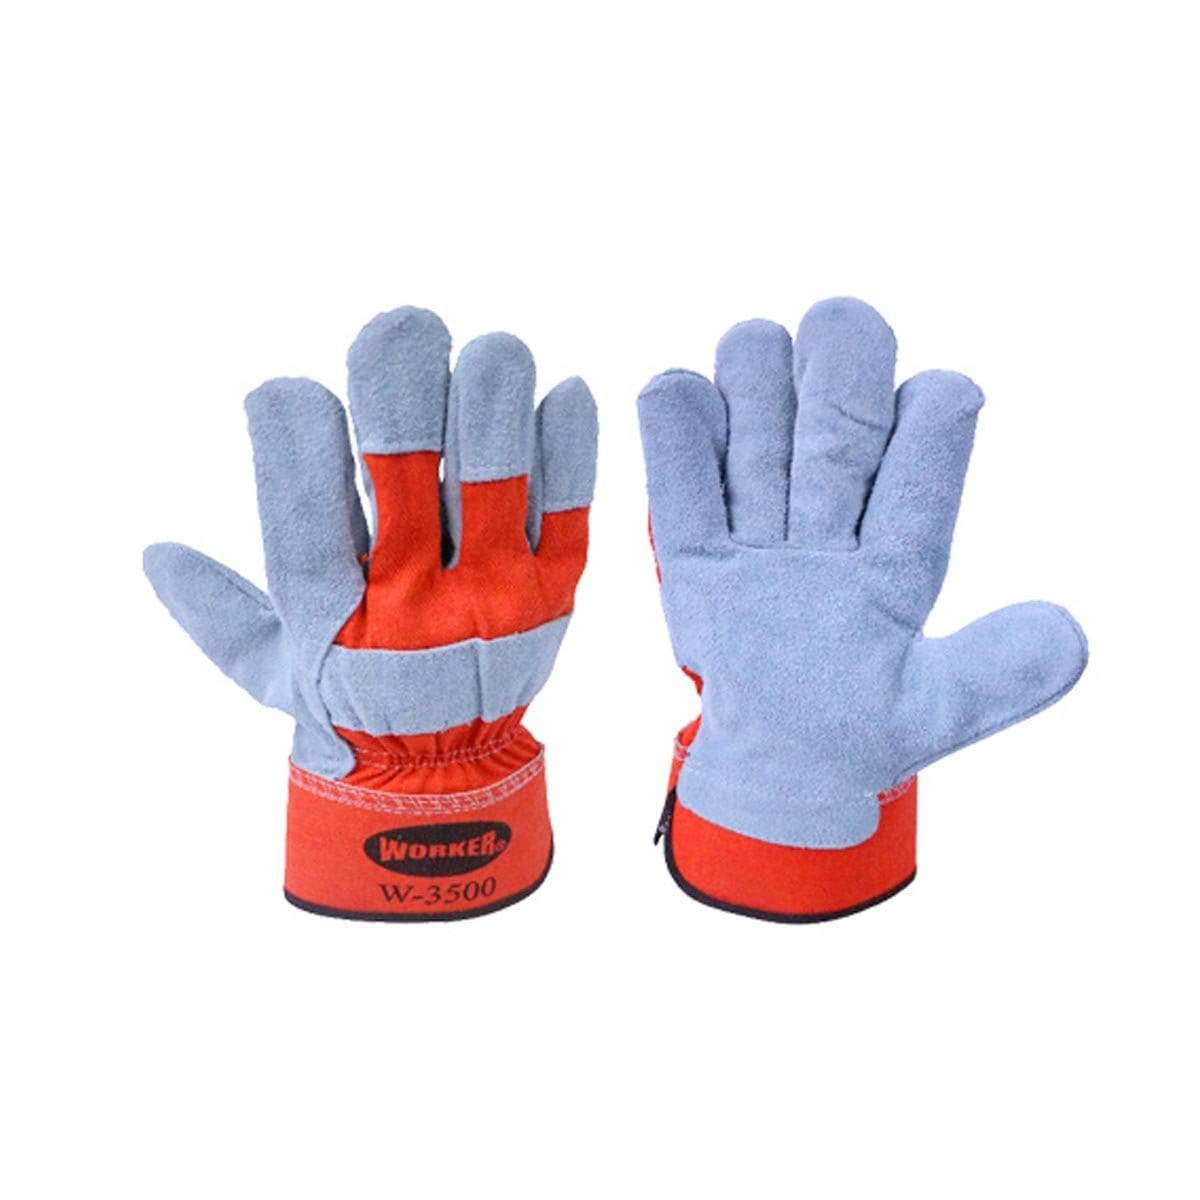 WORKER Orange Semi Leather Gloves G3500